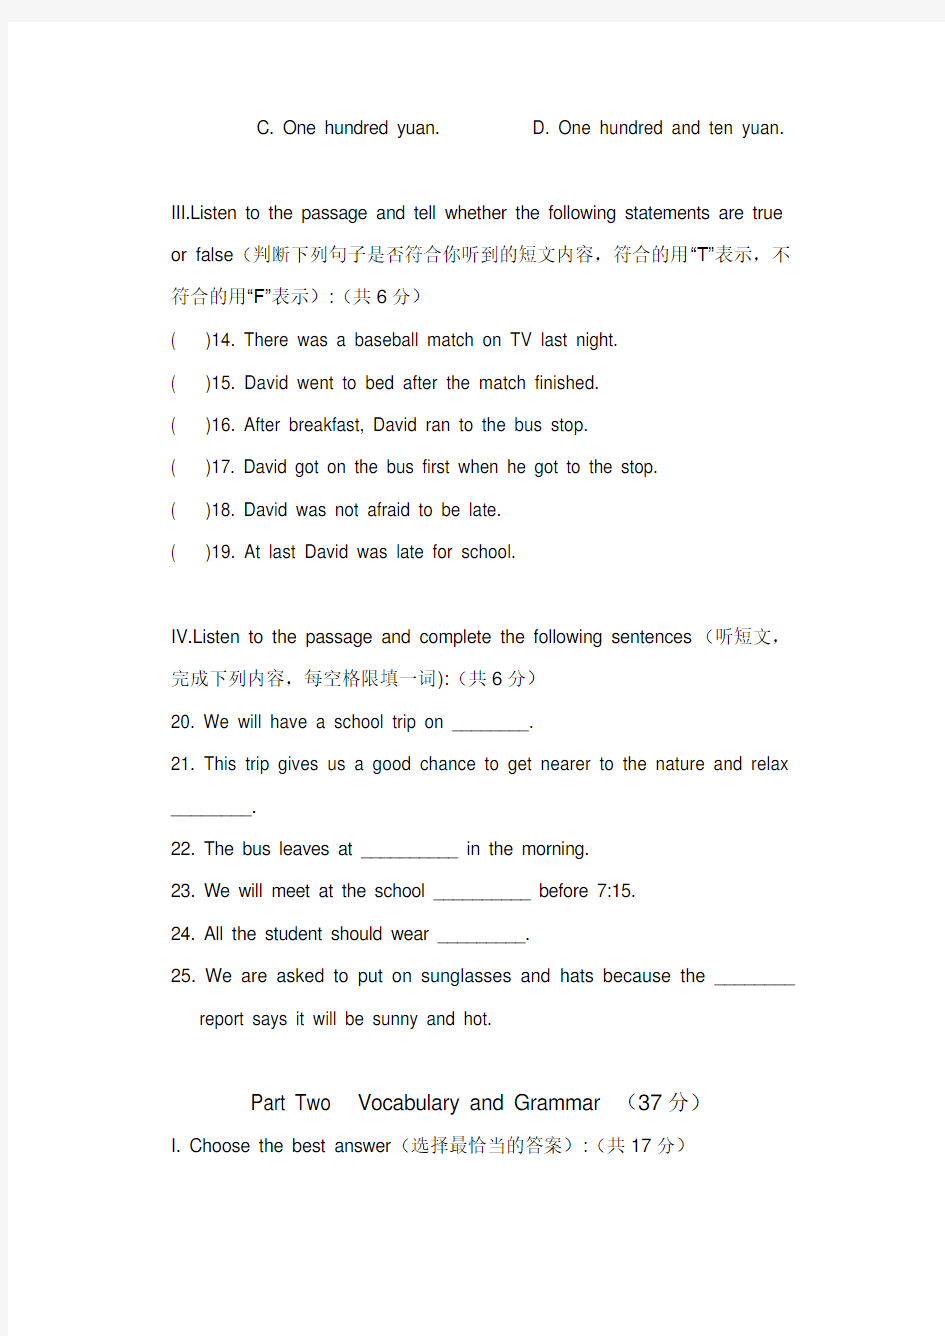 上海版牛津英语7A期中试卷答题纸及听力文字和答案复习过程